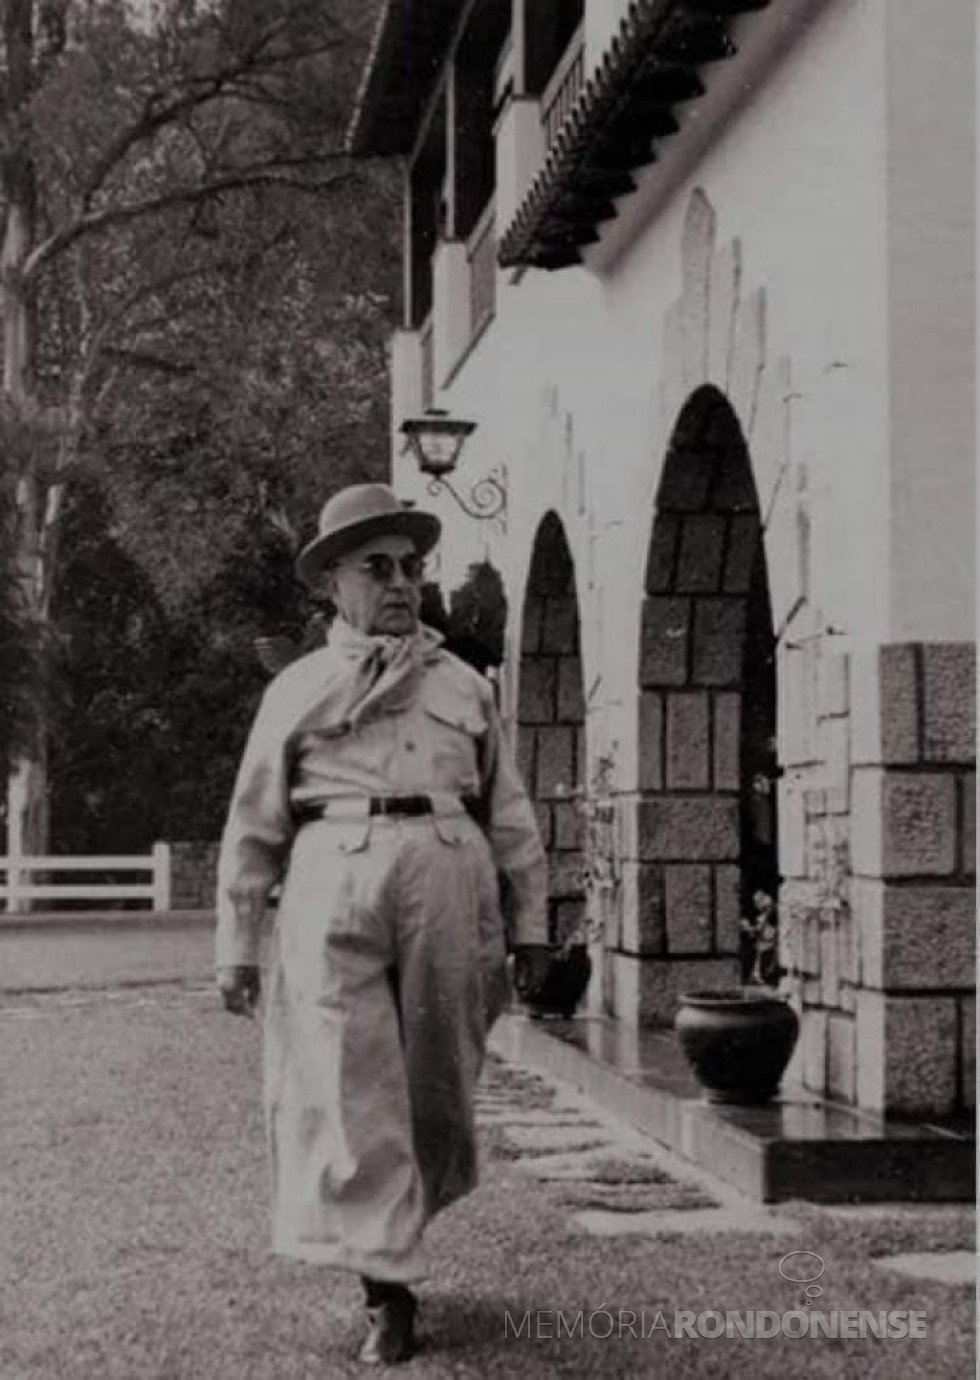 || Presidente Getúlio Vargas, em traje paramilitar, protagonista do Decreto que impunha vedações a estrangeiros no Brasil, em abril de 1938.
Imagem: Acervo Fundação Getúlio Vargas - FOTO 5 -
